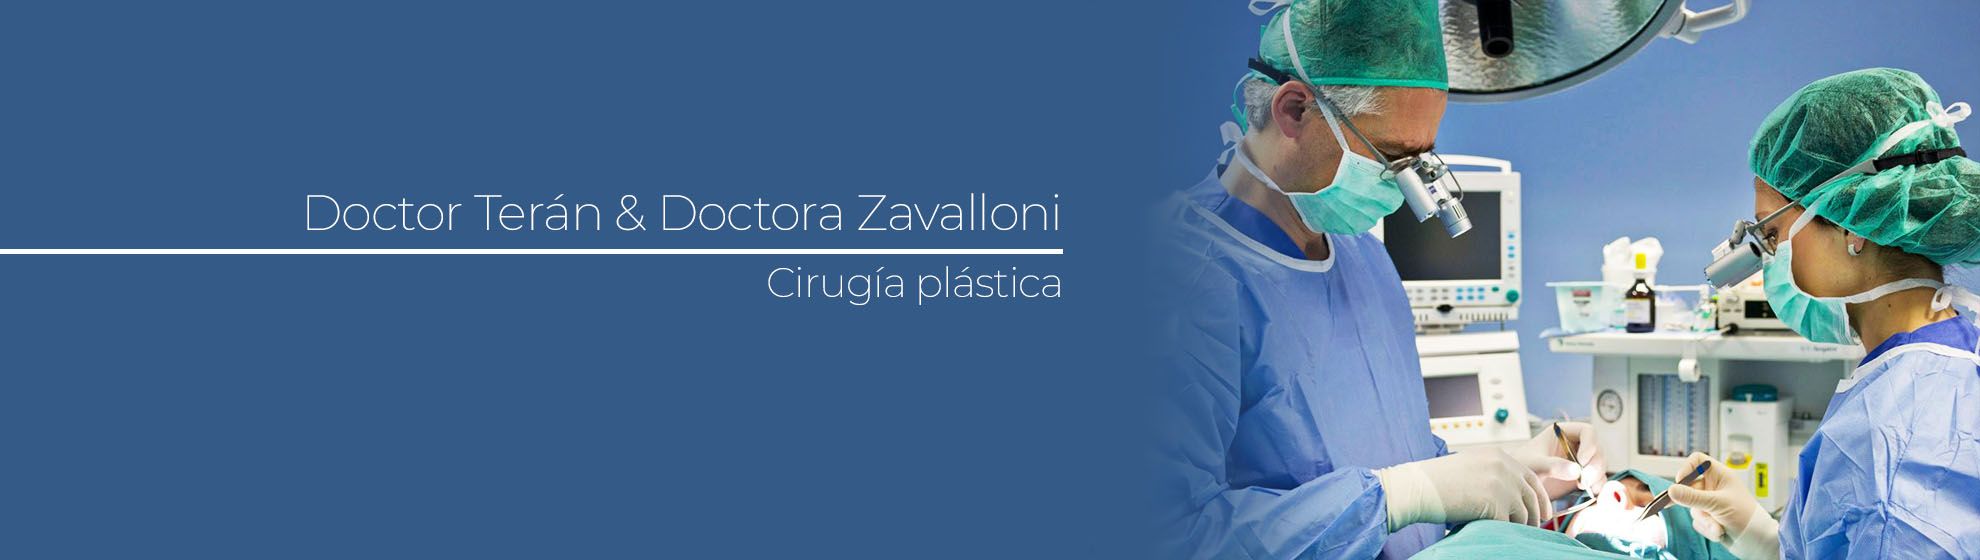 Doctor Terán & Doctora Zavalloni - Cirugía plástica